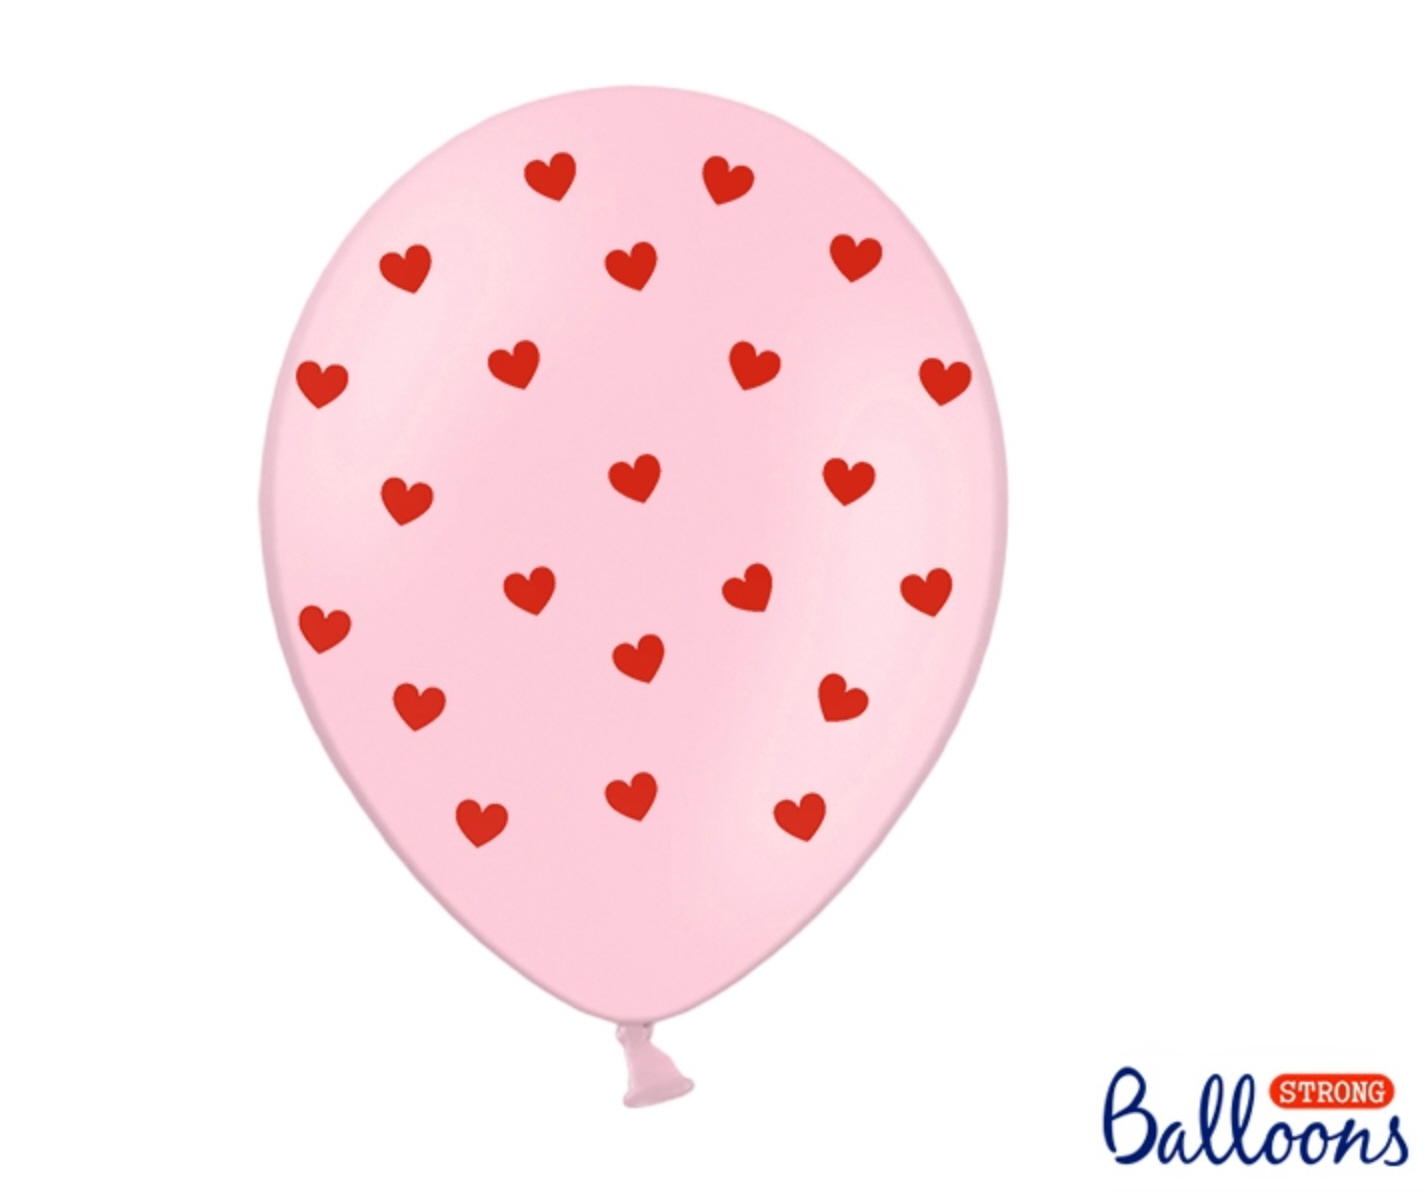 Balloons Hearts 30cm Luftballoone mit Herzaufdruck 30cm 6 Stk.